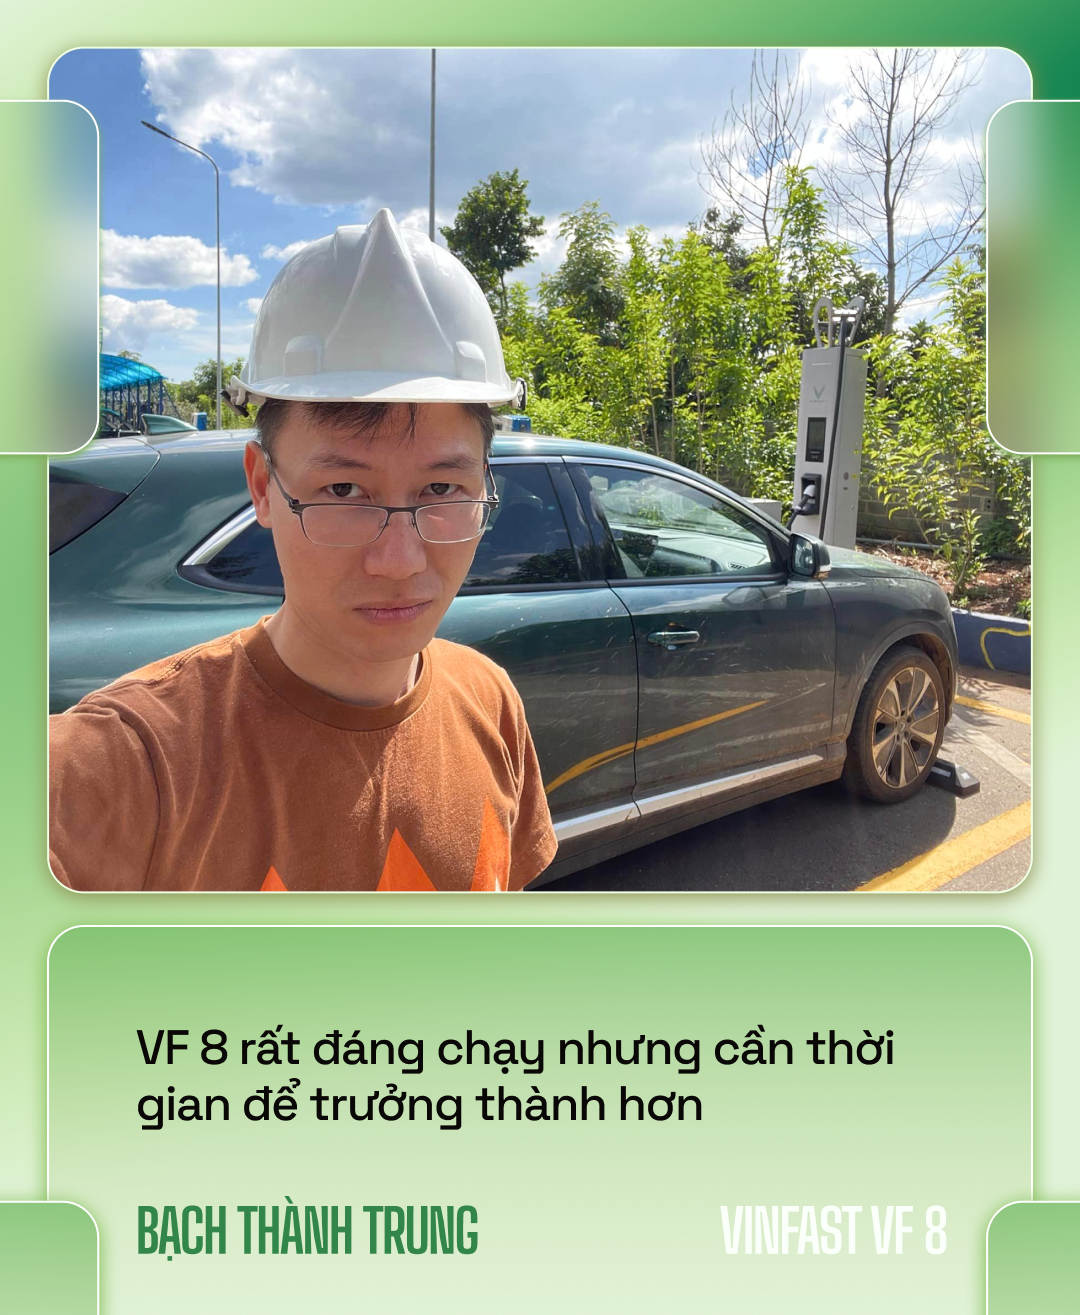 Nhà sáng lập VOZ lái VinFast VF 8 xuyên Việt hơn 6.600km: ‘Đổ đèo nhàn hơn xe xăng, nhưng vẫn cần hoàn thiện hơn’ - Ảnh 1.